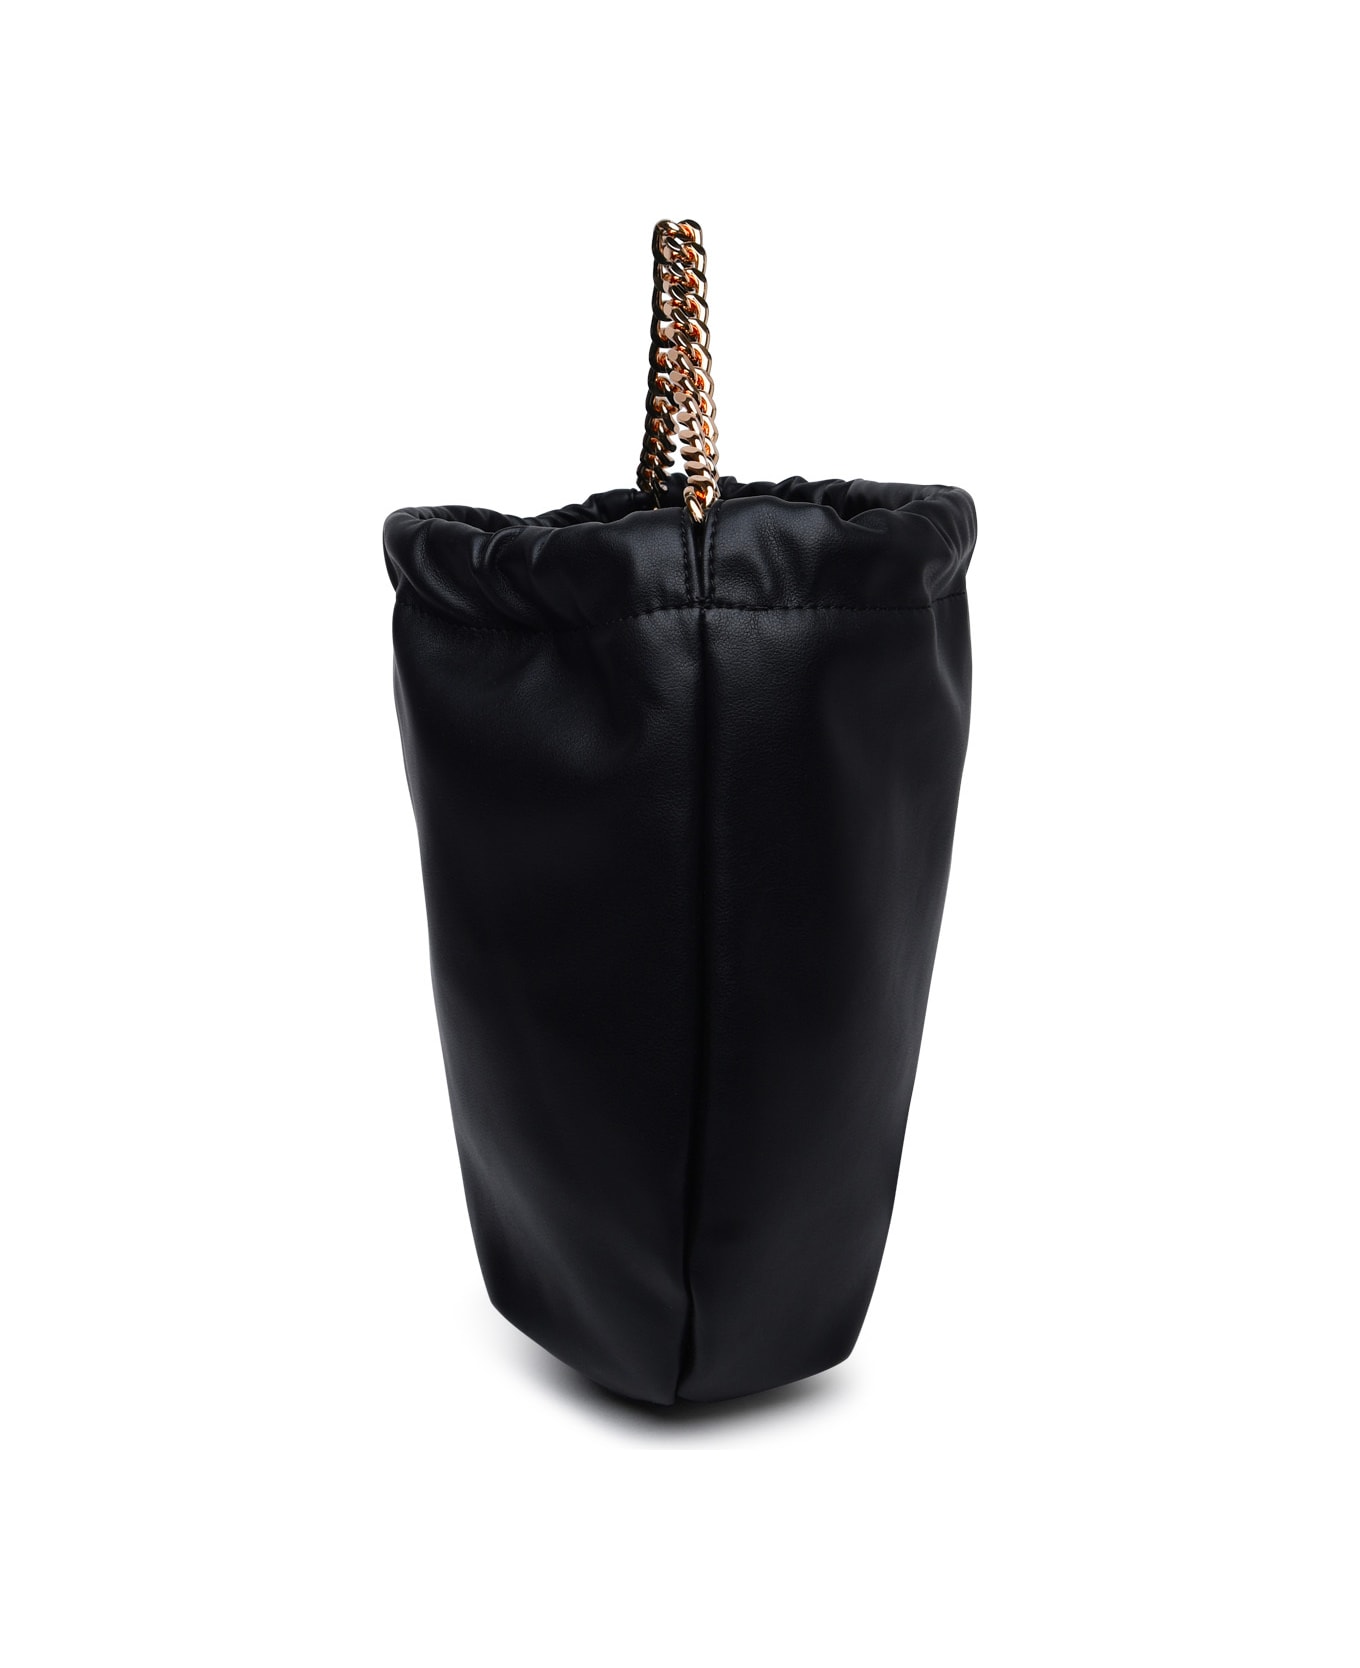 A.P.C. Ninon Chain Bag - BLACK